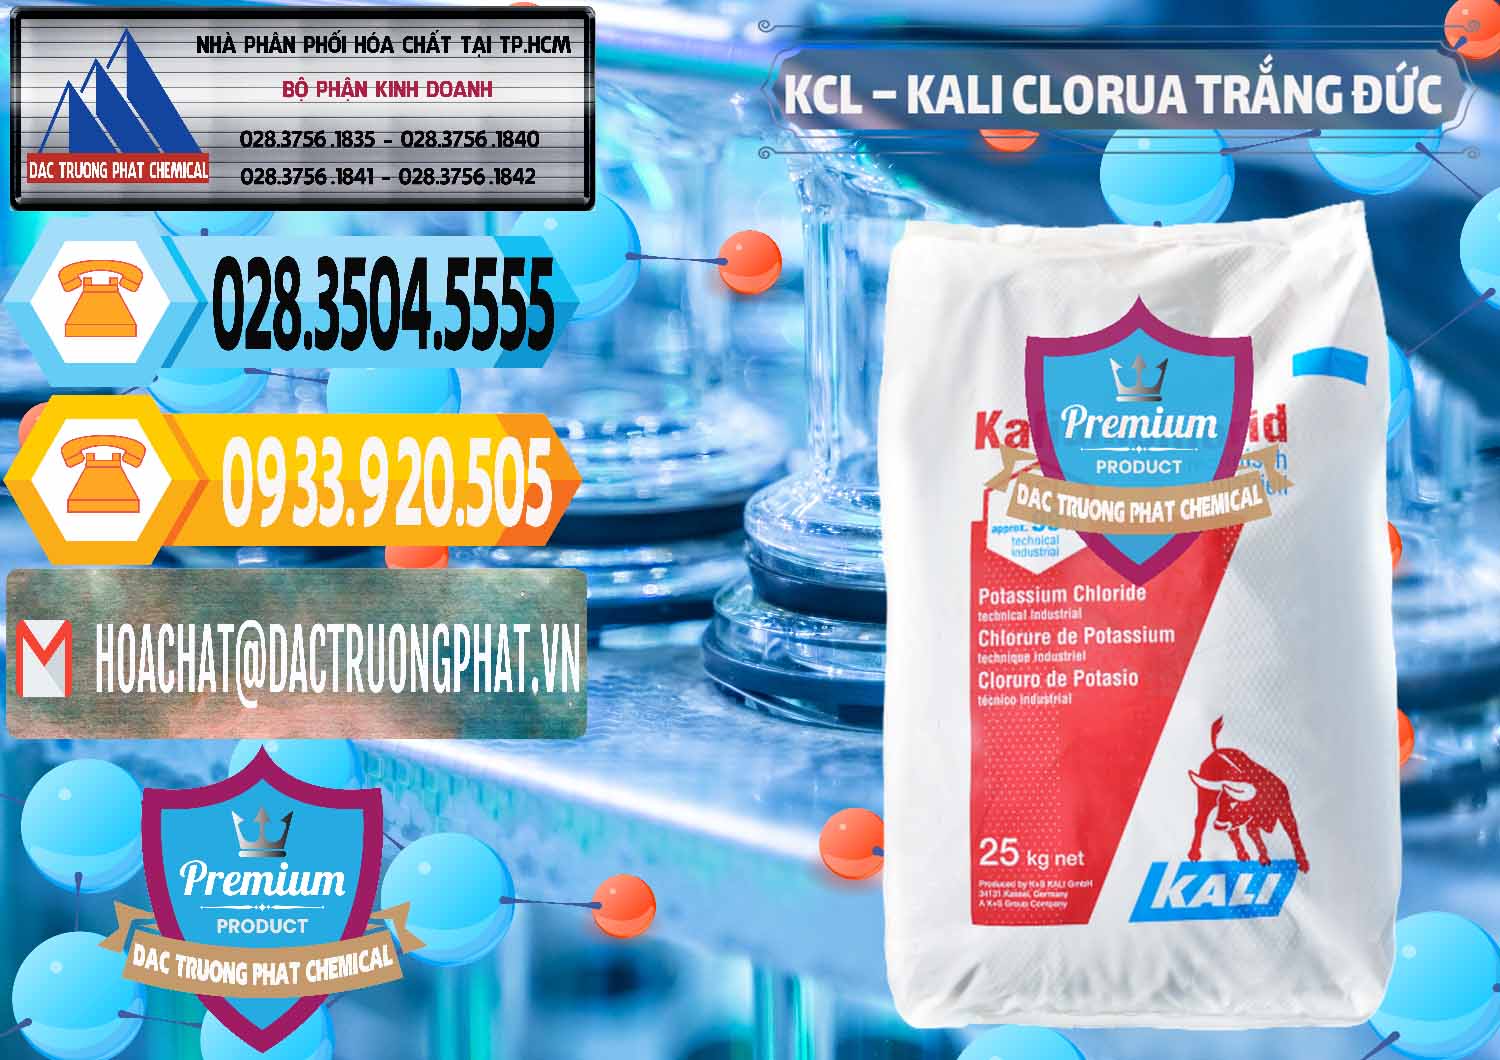 Cty chuyên cung ứng & bán KCL – Kali Clorua Trắng Đức Germany - 0086 - Nơi cung cấp - bán hóa chất tại TP.HCM - hoachattayrua.net